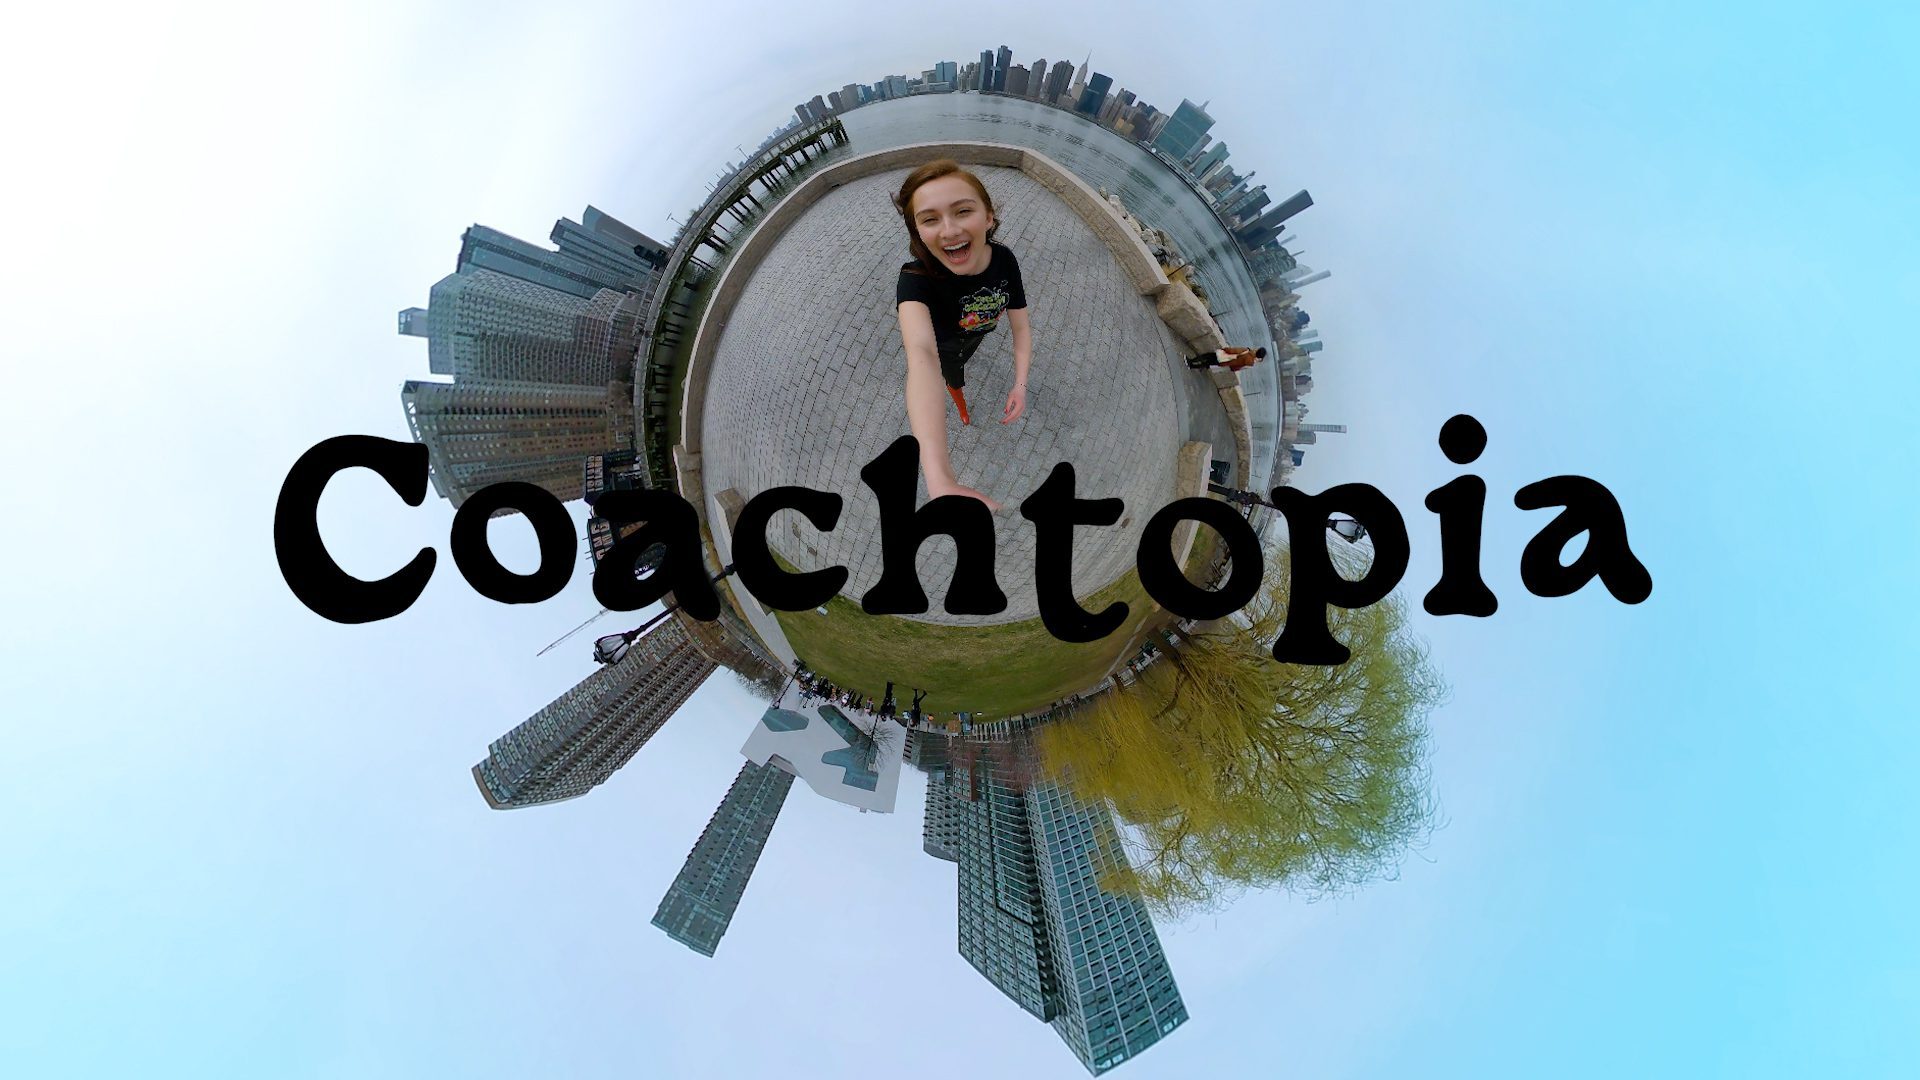 Coachtopia: Behind The Scenes